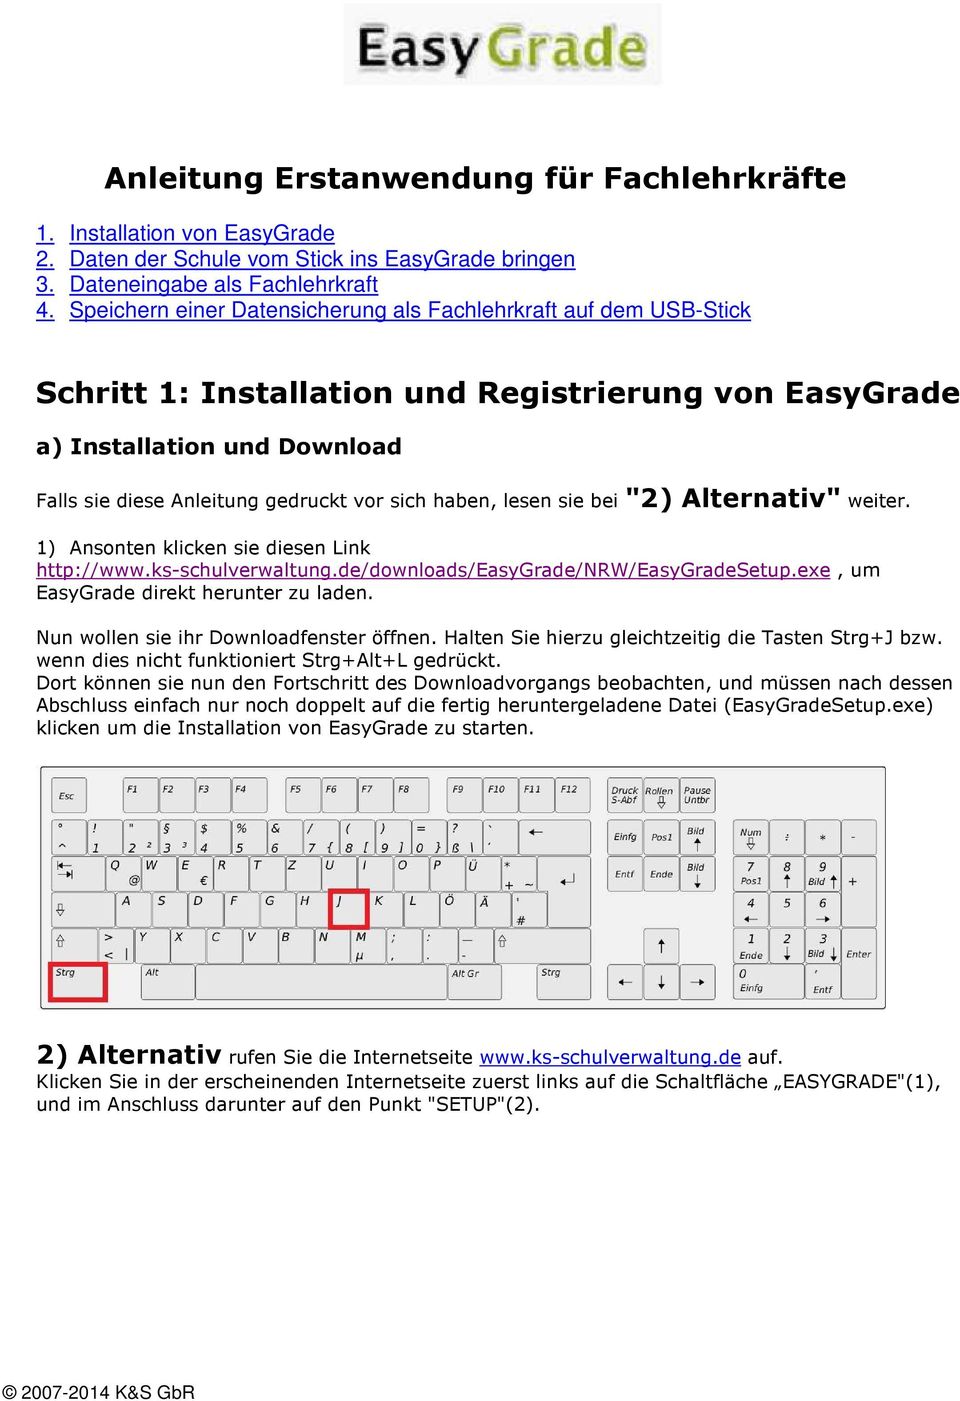 haben, lesen sie bei "2) Alternativ" weiter. 1) Ansonten klicken sie diesen Link http://www.ks-schulverwaltung.de/downloads/easygrade/nrw/easygradesetup.exe, um EasyGrade direkt herunter zu laden.